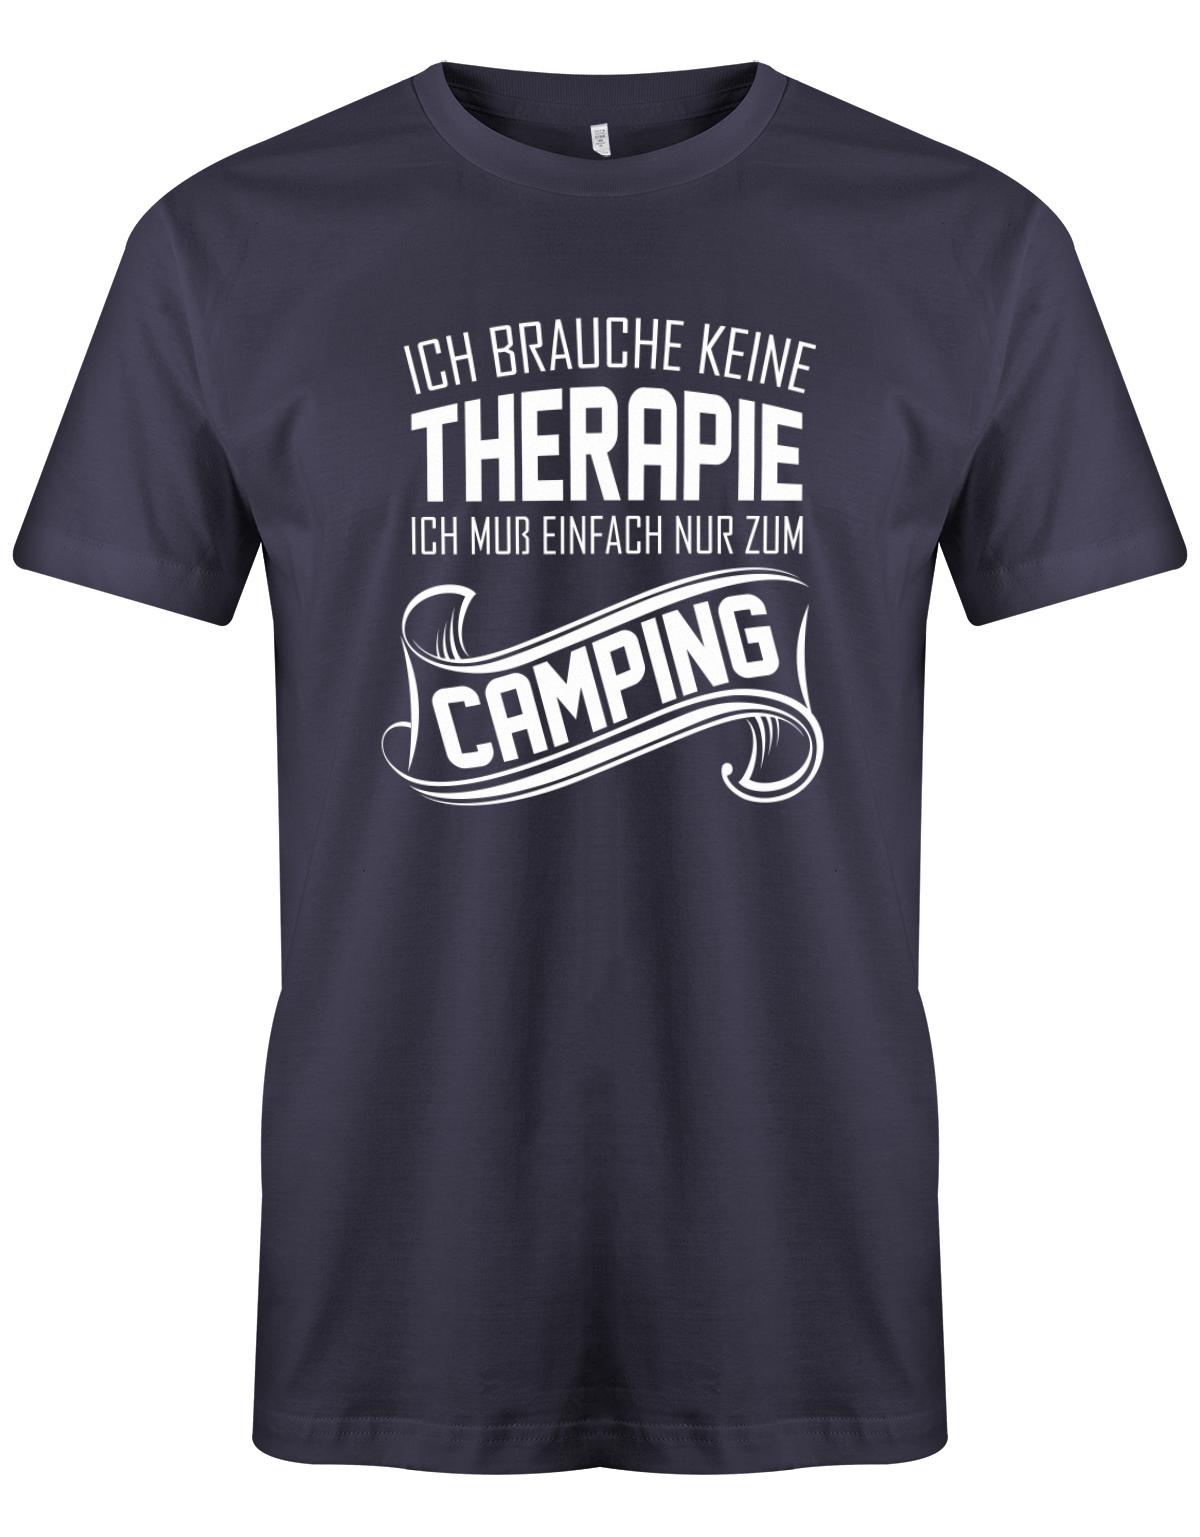 Ich-brauche-keine-Therapie-ich-muss-einfach-nur-zum-camping-Herren-Camper-Shirt-Navy